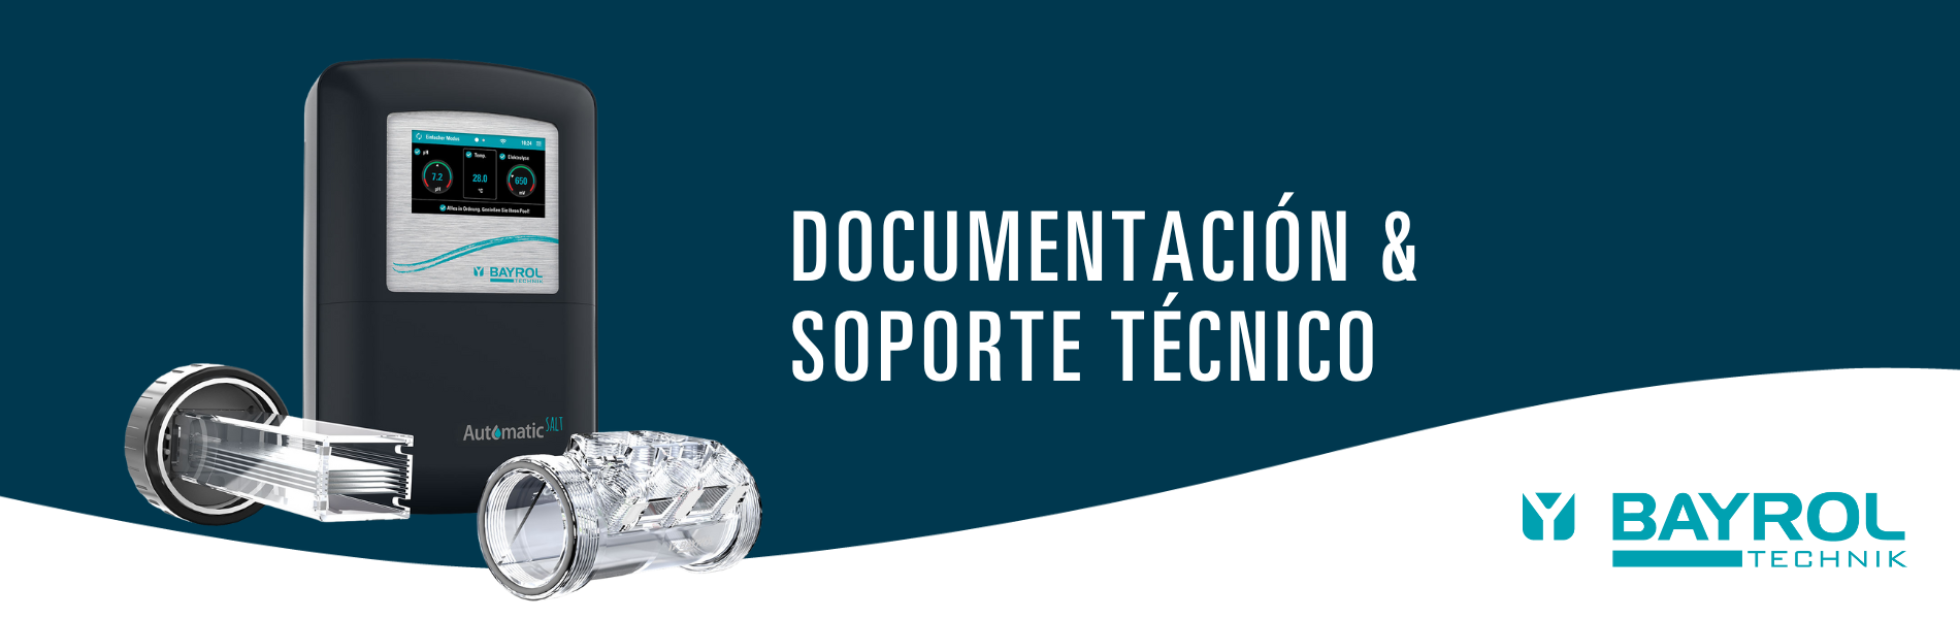 Documentacion & suporte tecnico